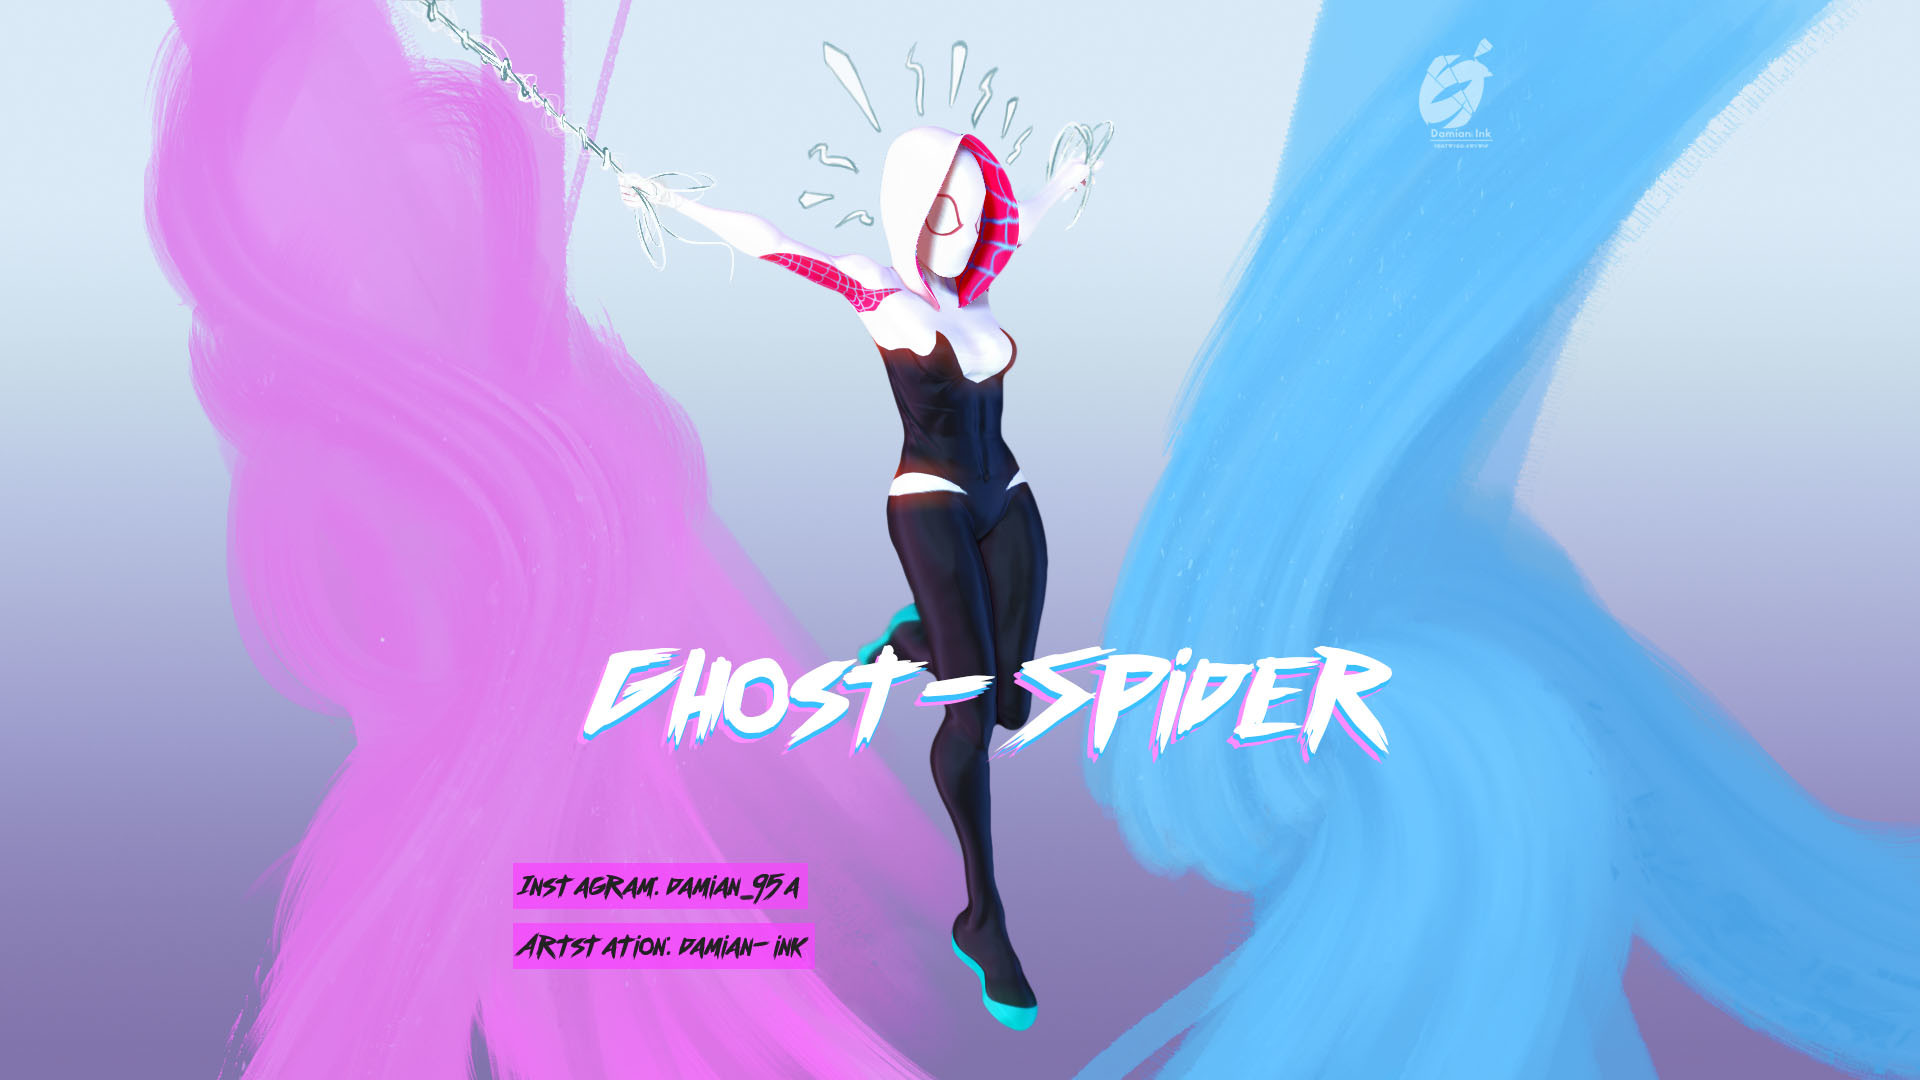 Ghost-Spider! 